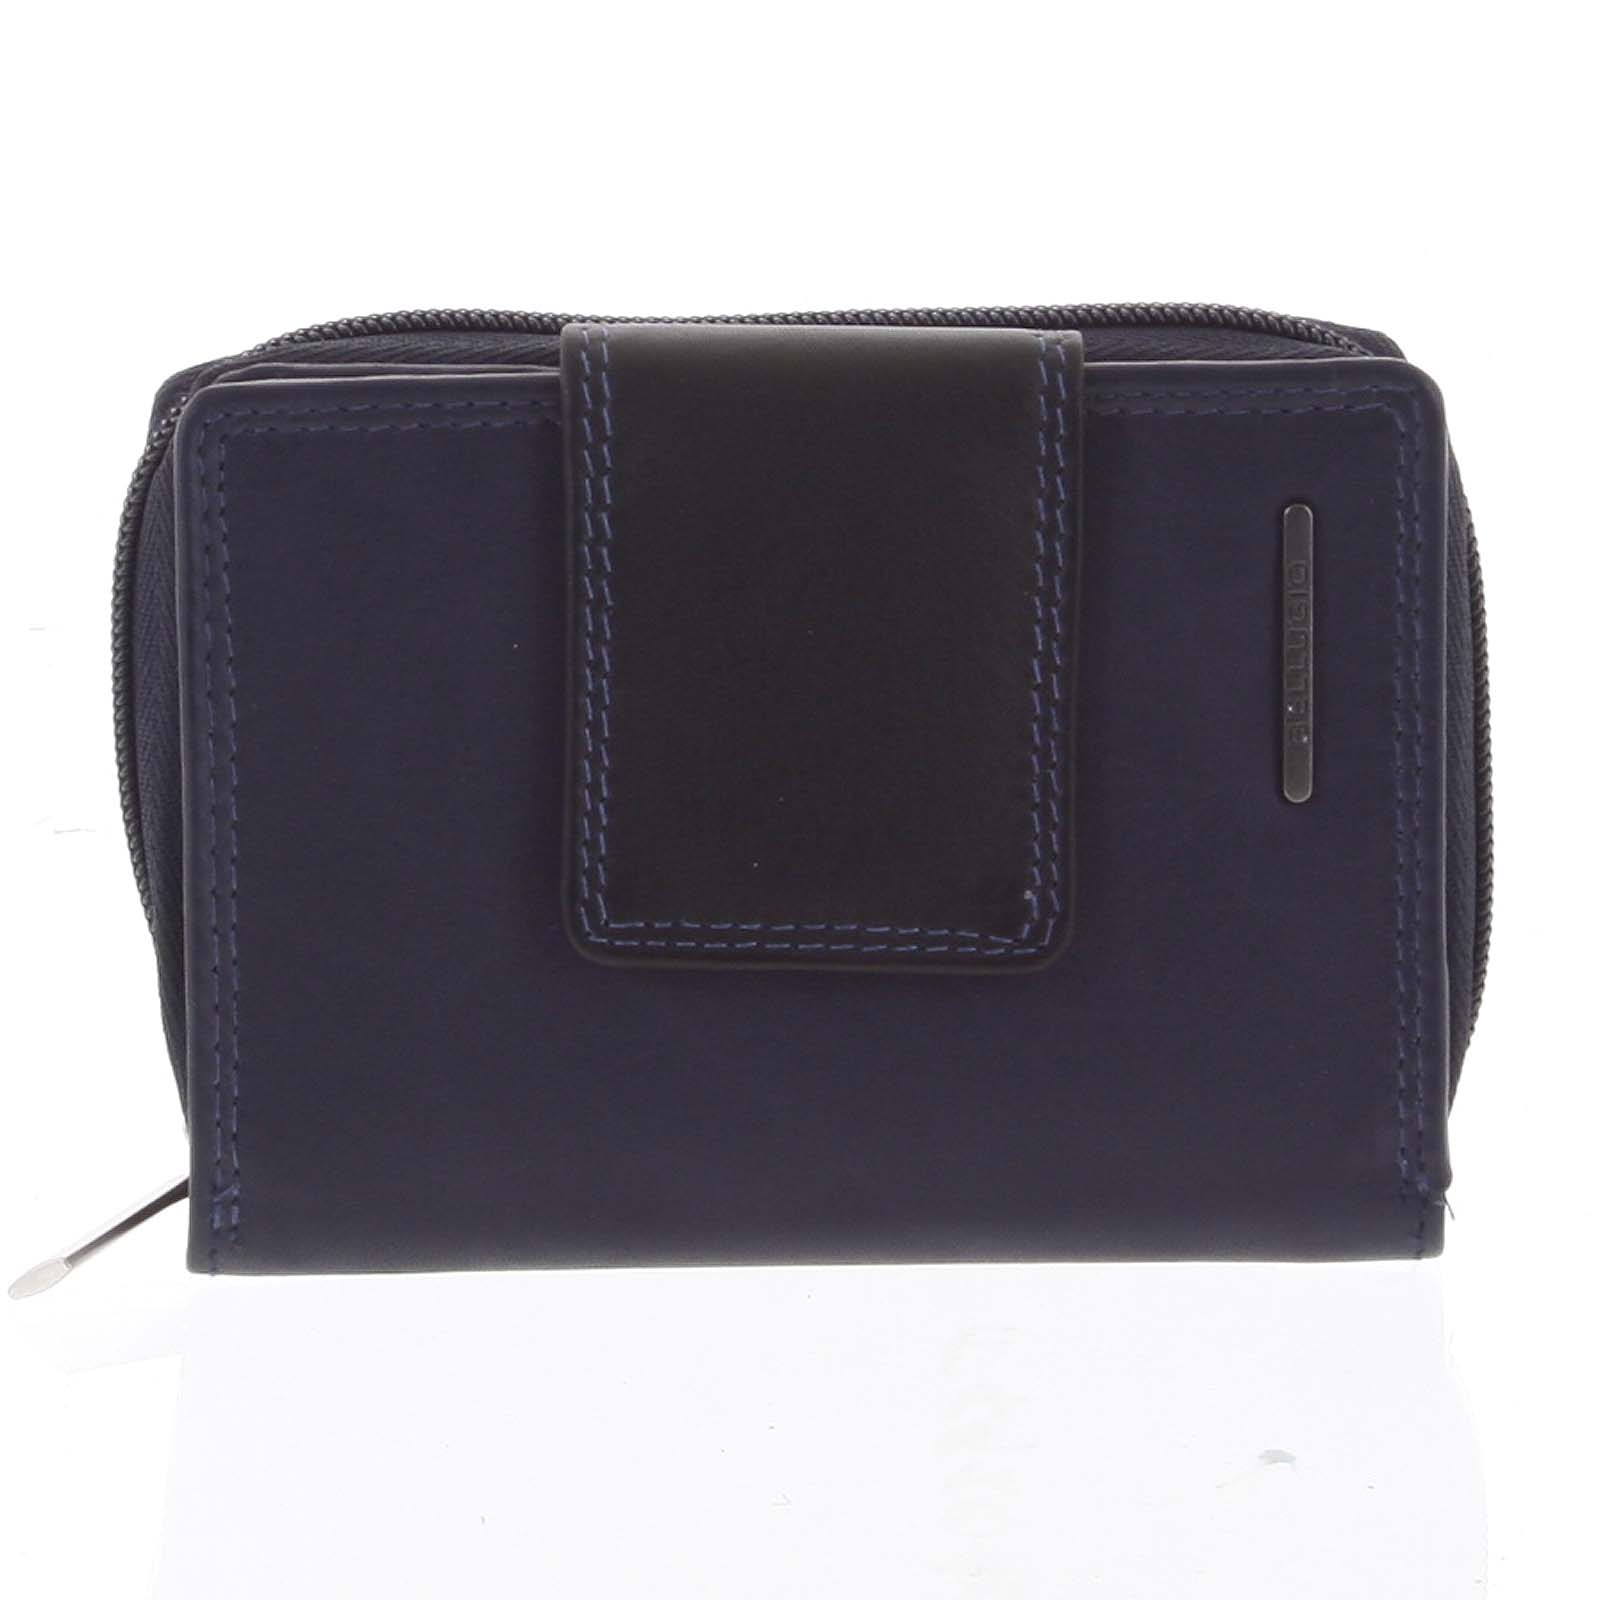 Dámska kožená peňaženka modro čierna - Bellugio Eurusie